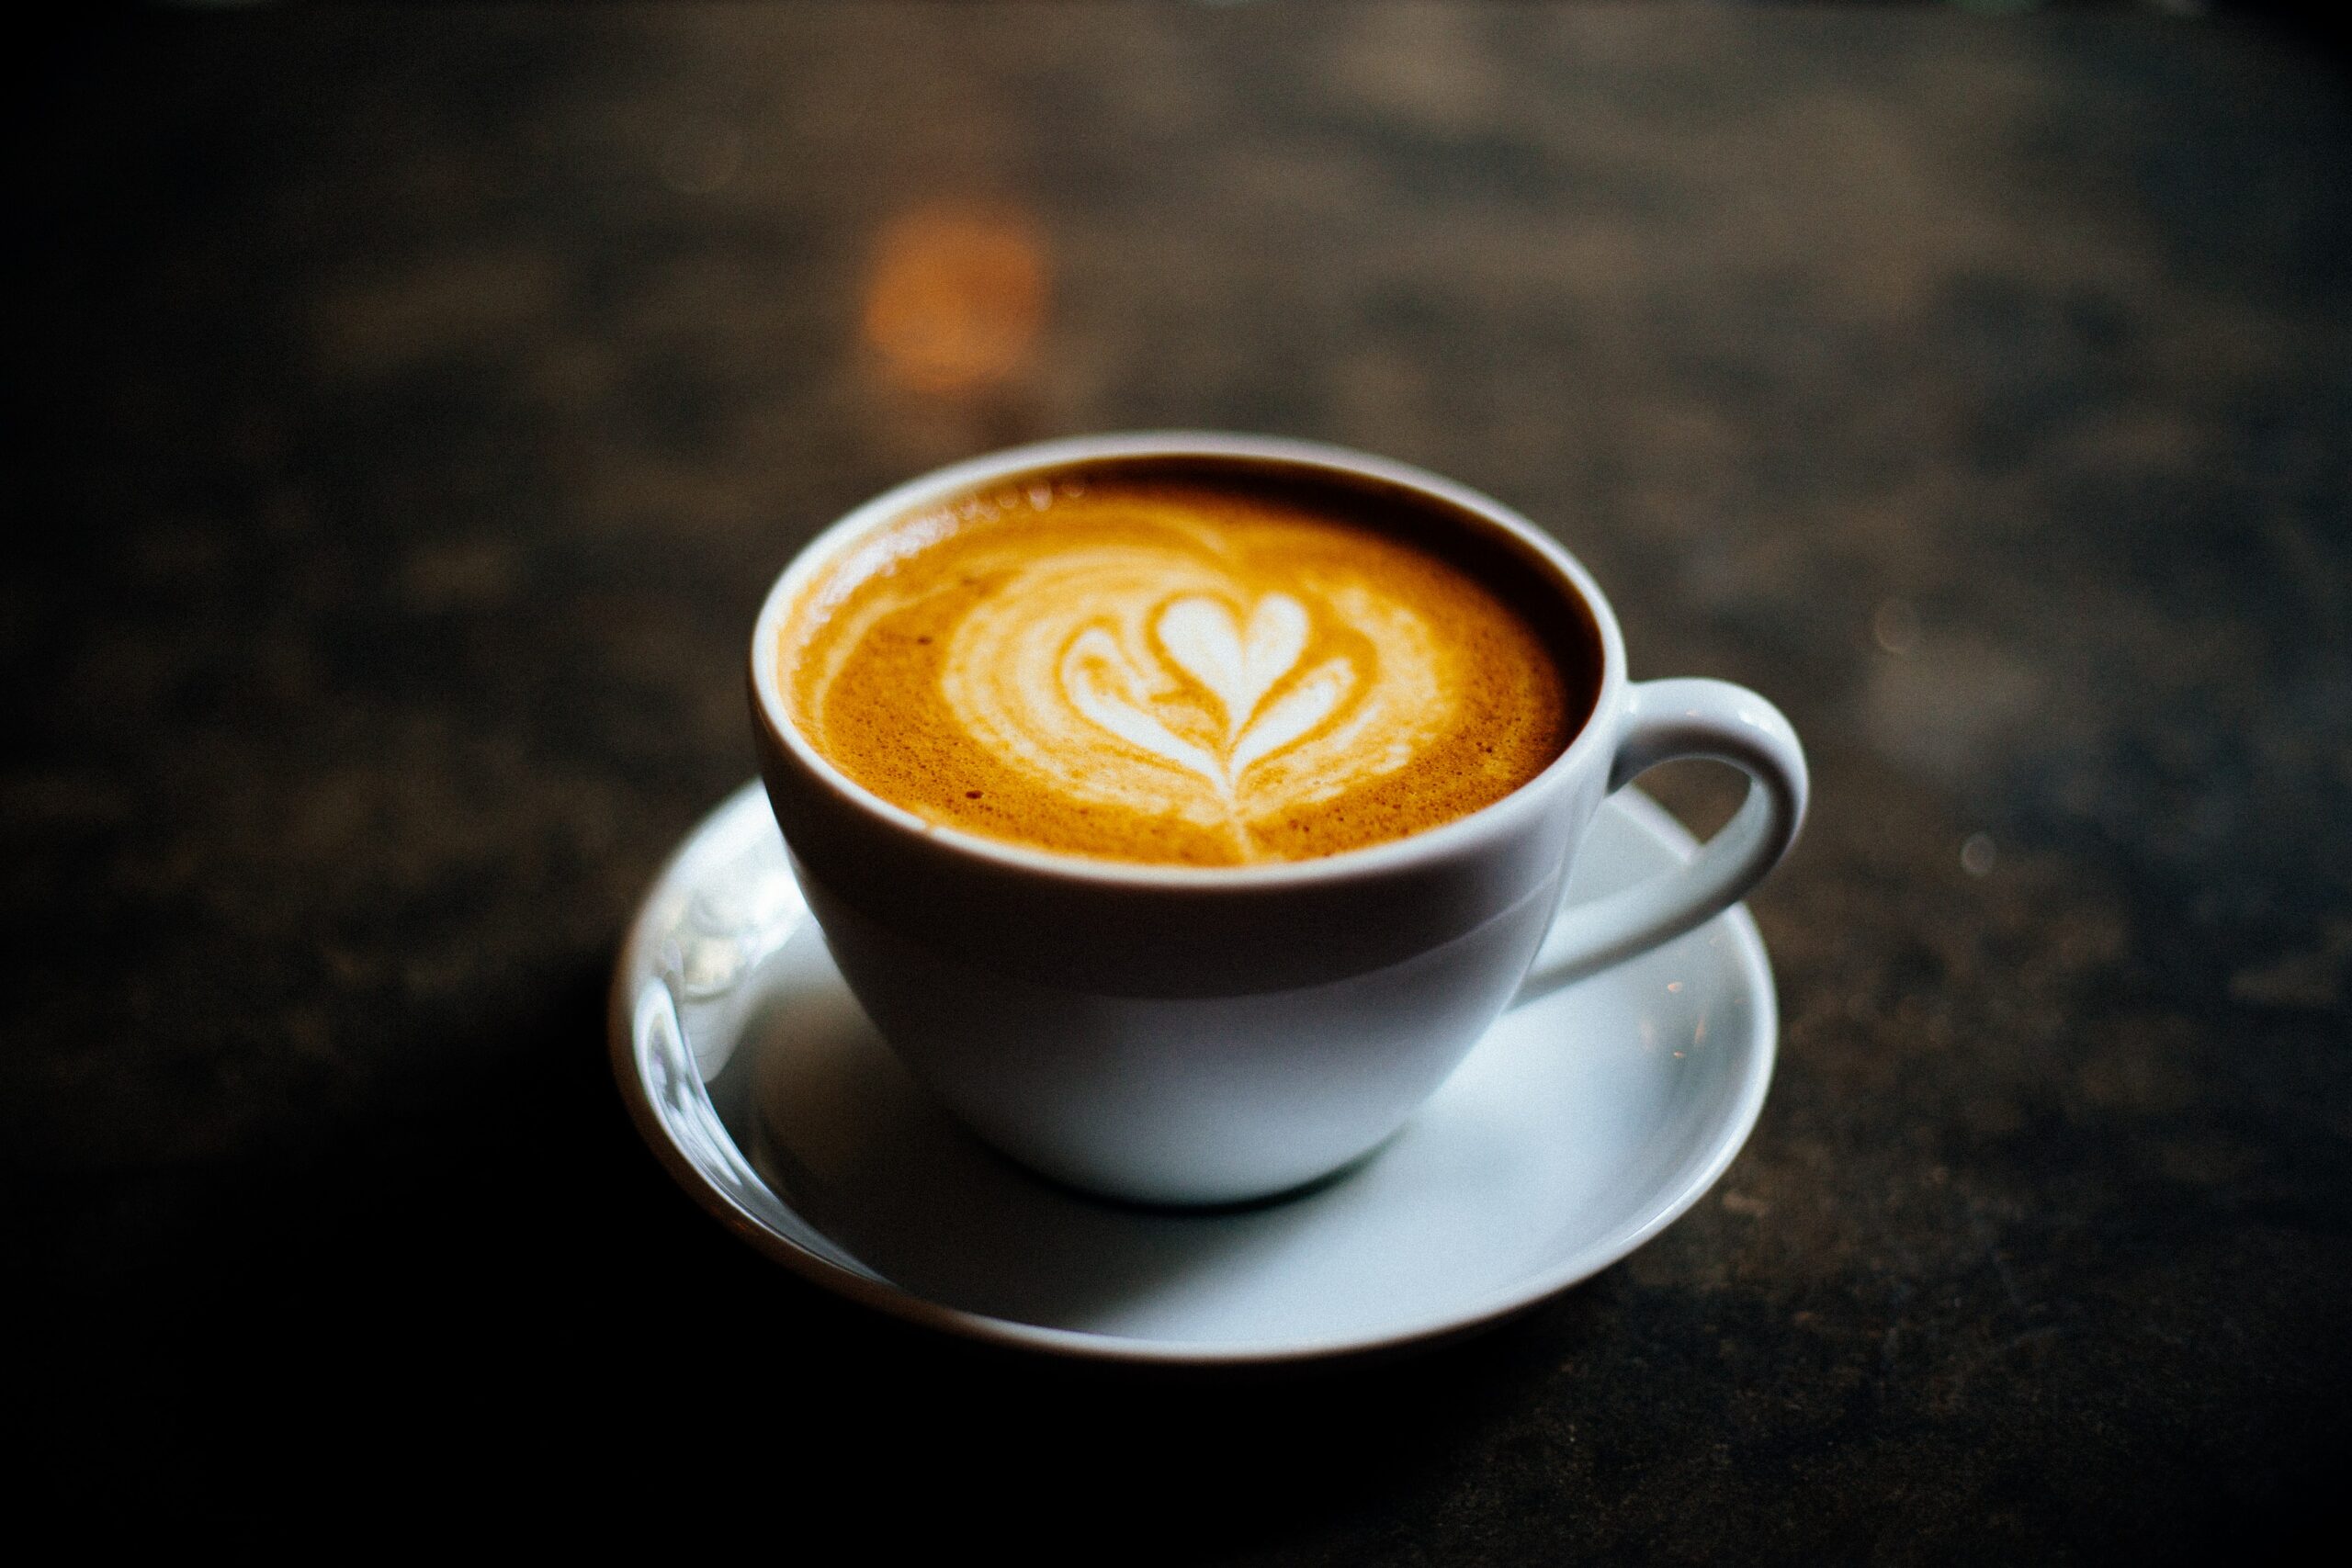 Cortado vs Macchiato vs Latte: Decoding Your Coffee Choices